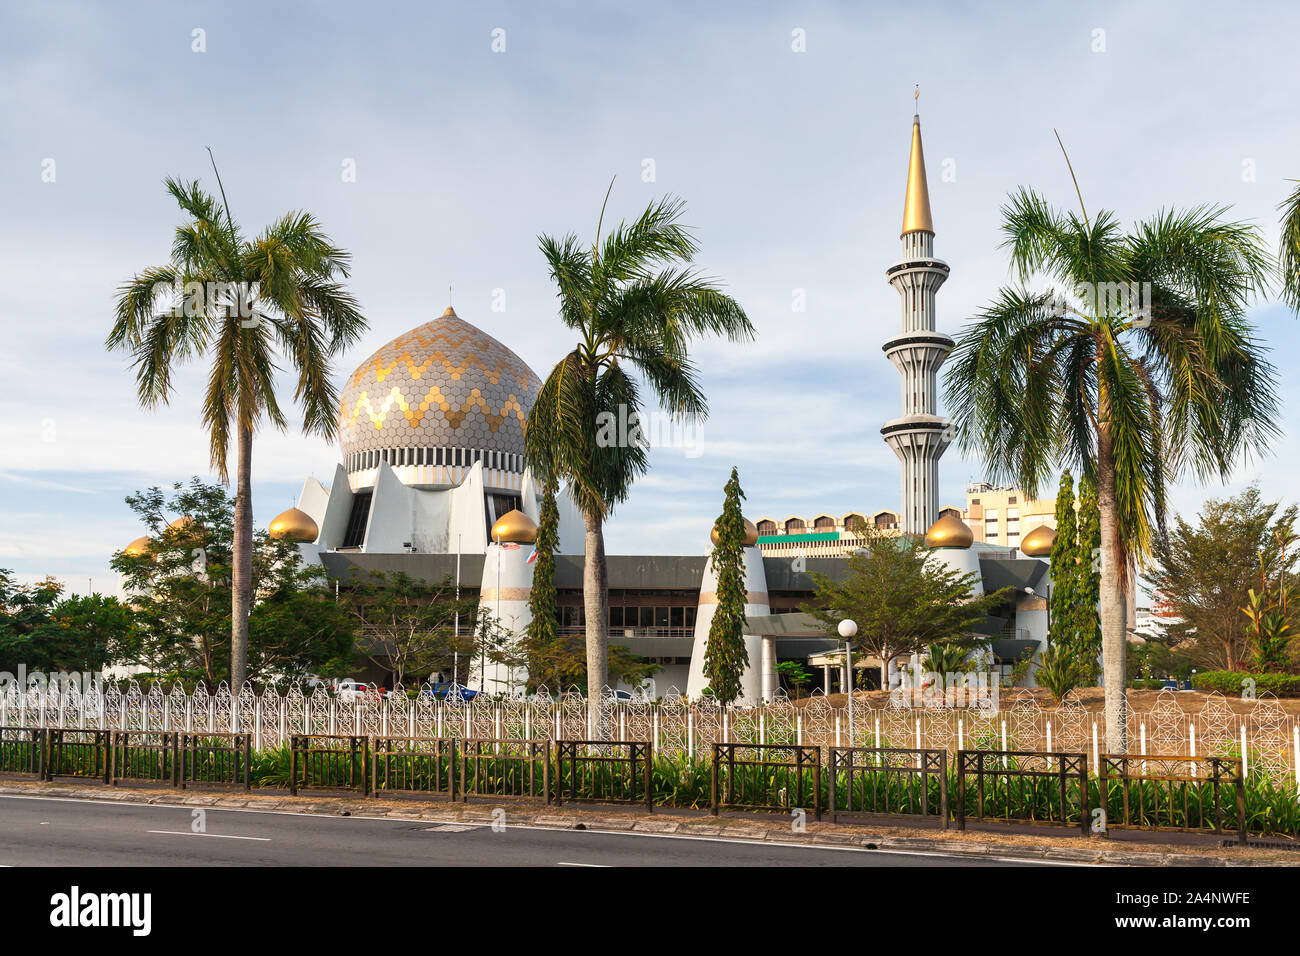 Mosquée Sabah State ou Masjid Negeri Sabah situé au rond-point de Sembulan à Kota Kinabalu, Malaisie Banque D'Images